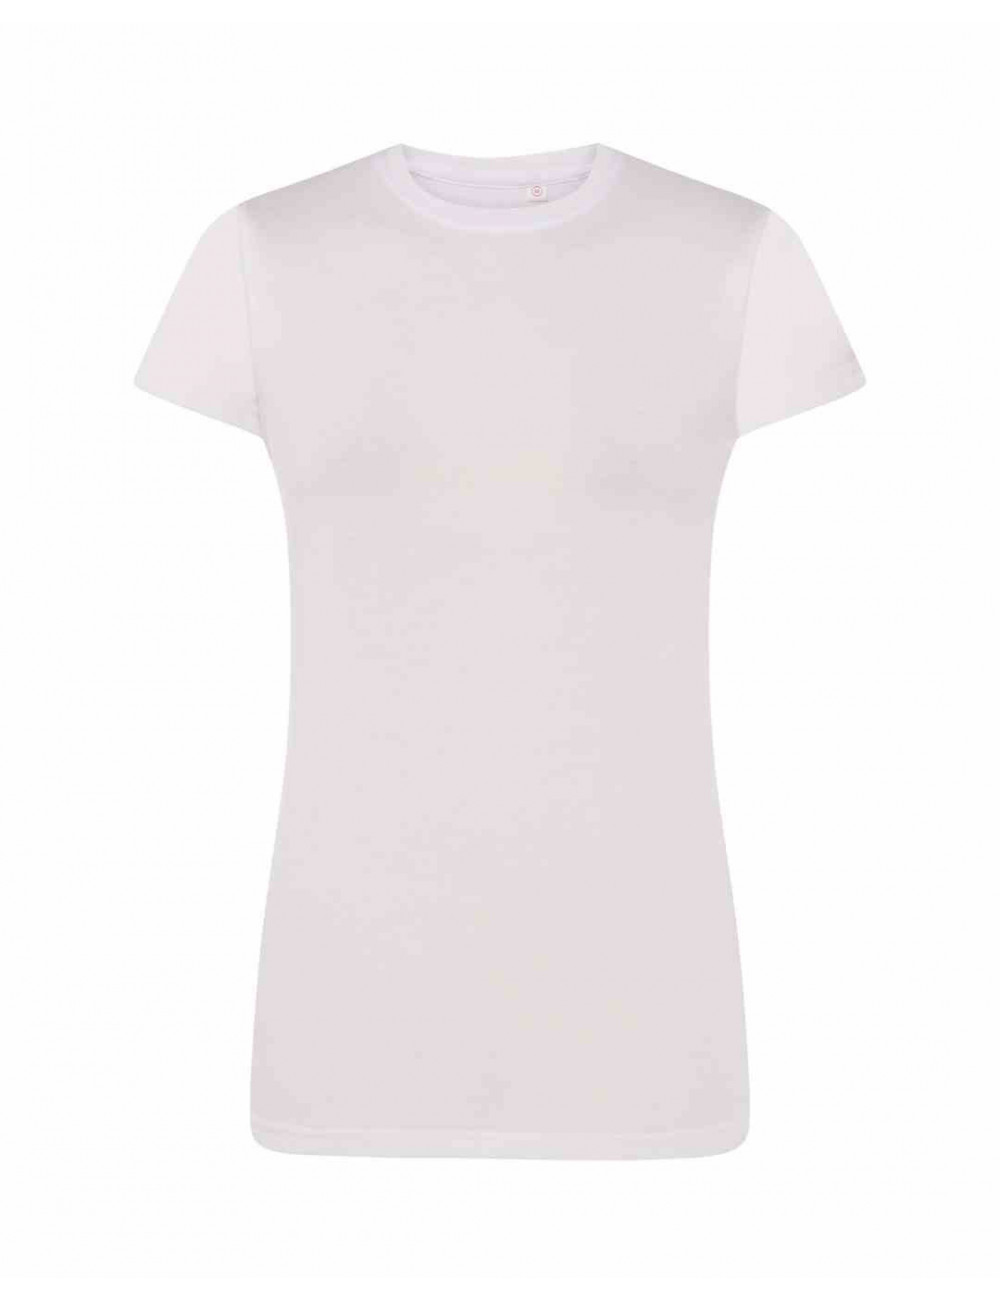 Women`s t-shirt sublimation subli comfort lady white efficient Jhk